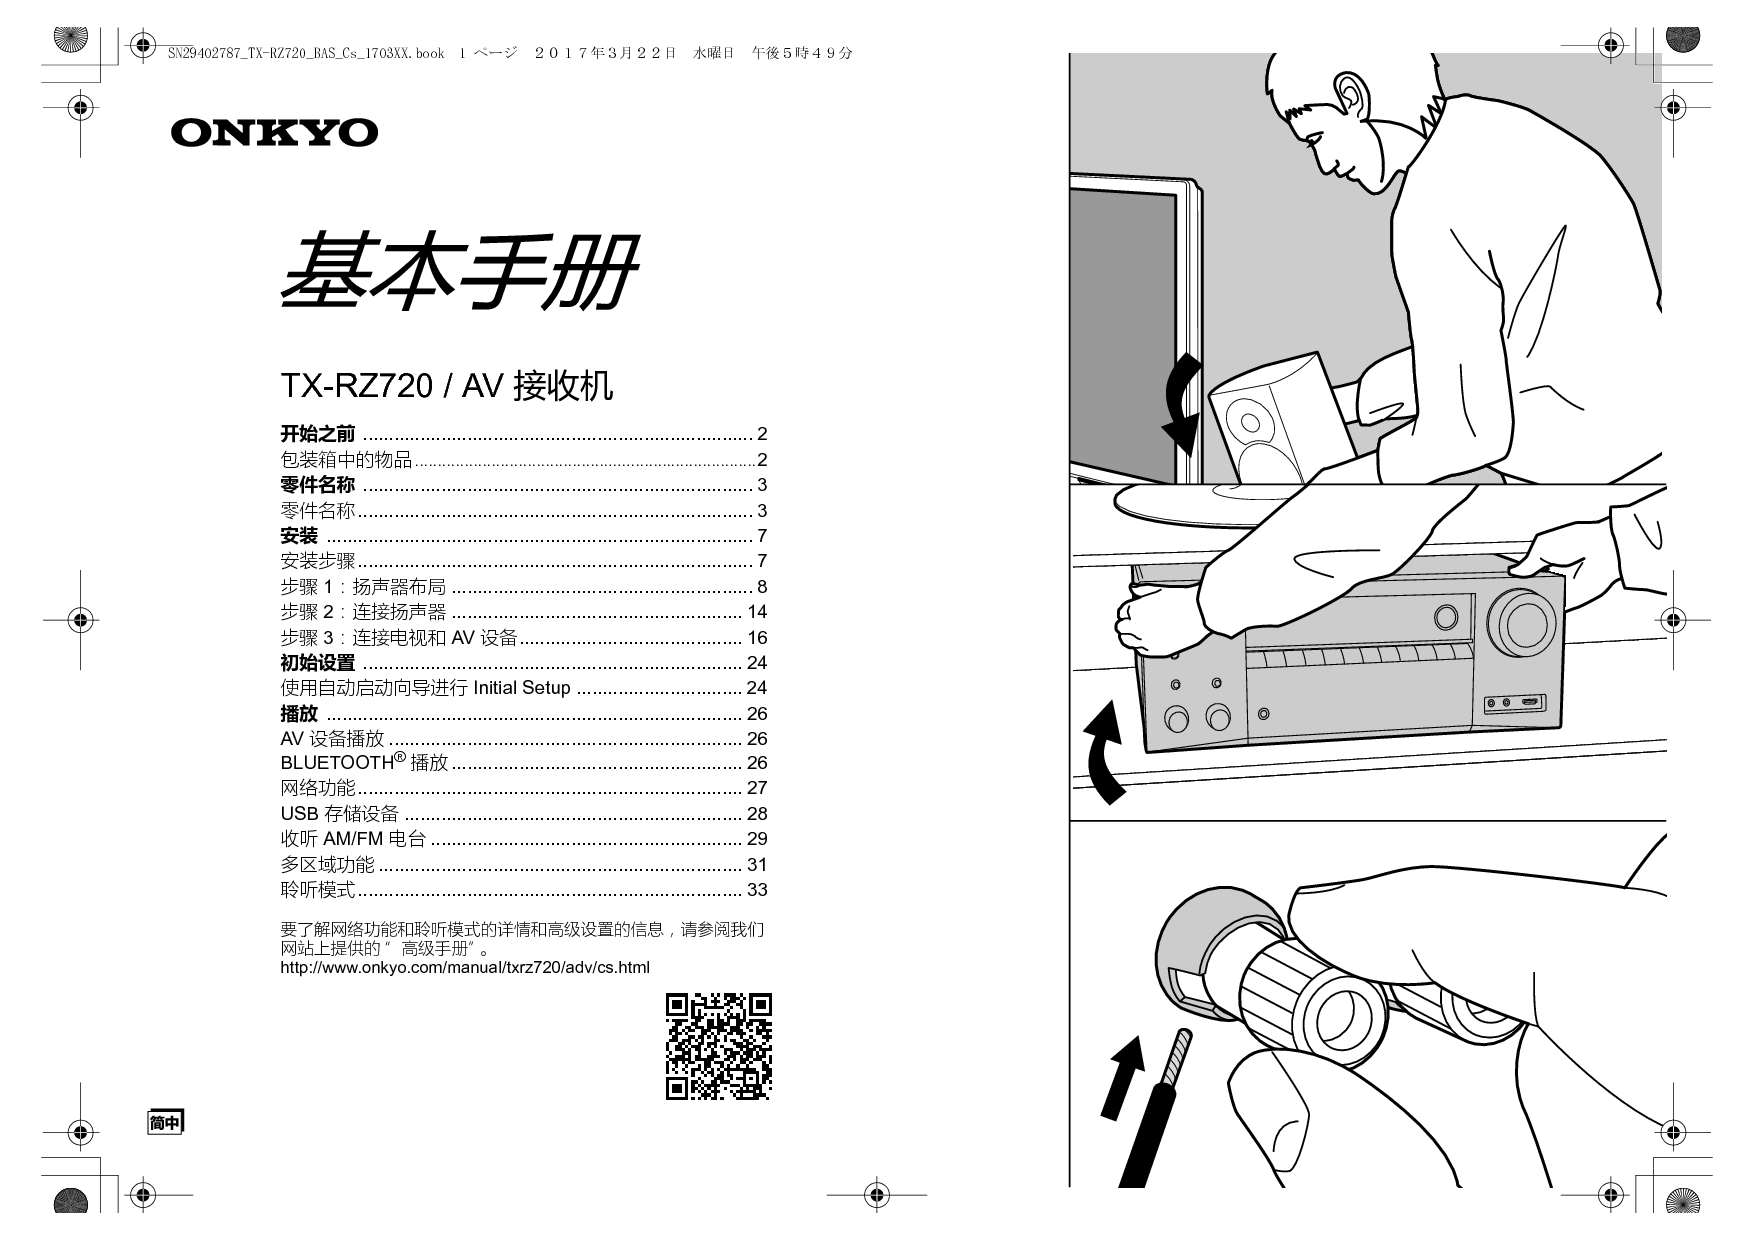 安桥 Onkyo TX-RZ720 基础使用手册 封面